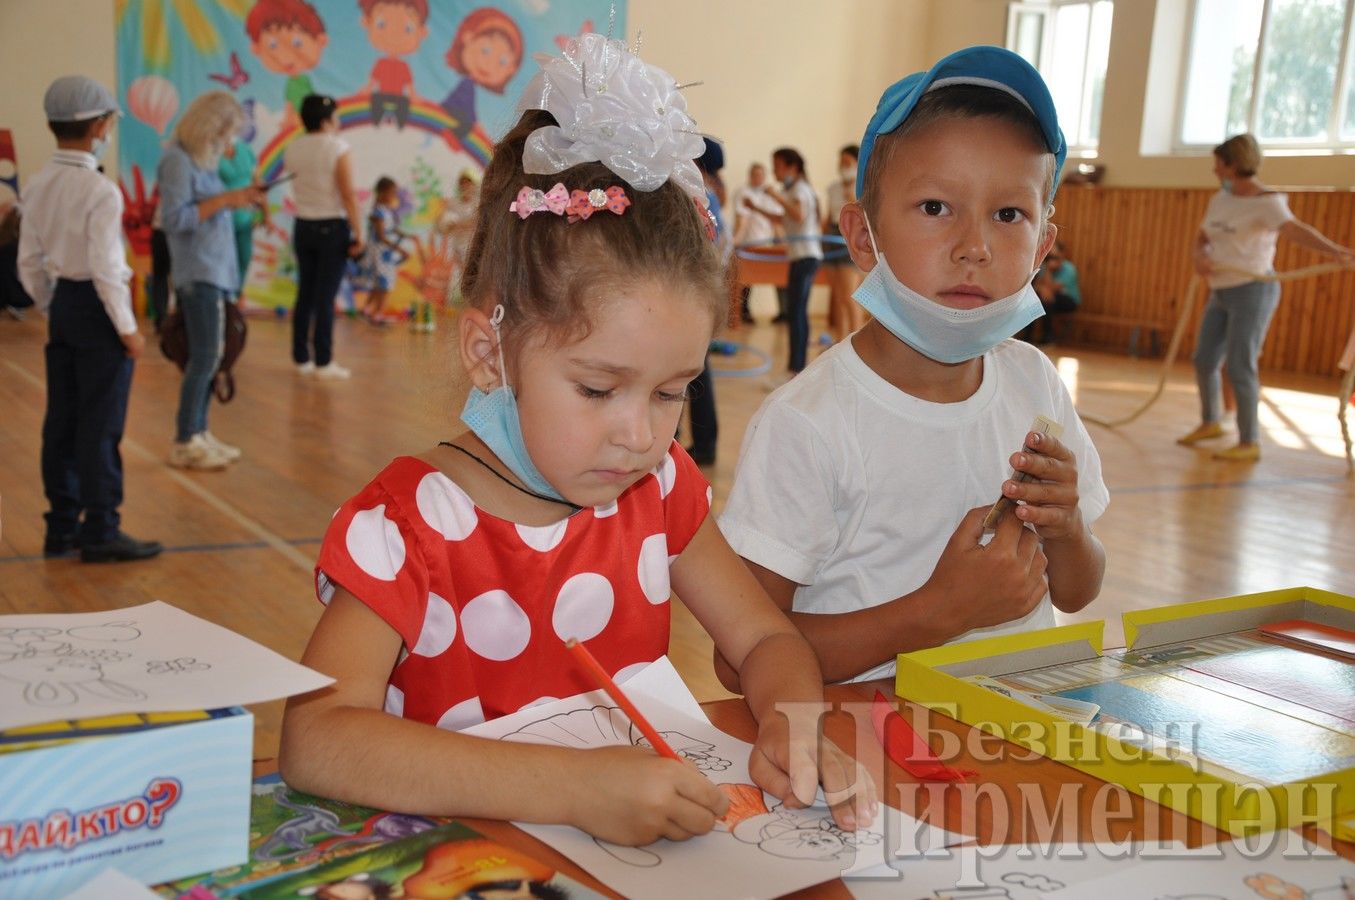 В Черемшане прошла акция "Помоги собраться в школу!" (ФОТОРЕПОРТАЖ)